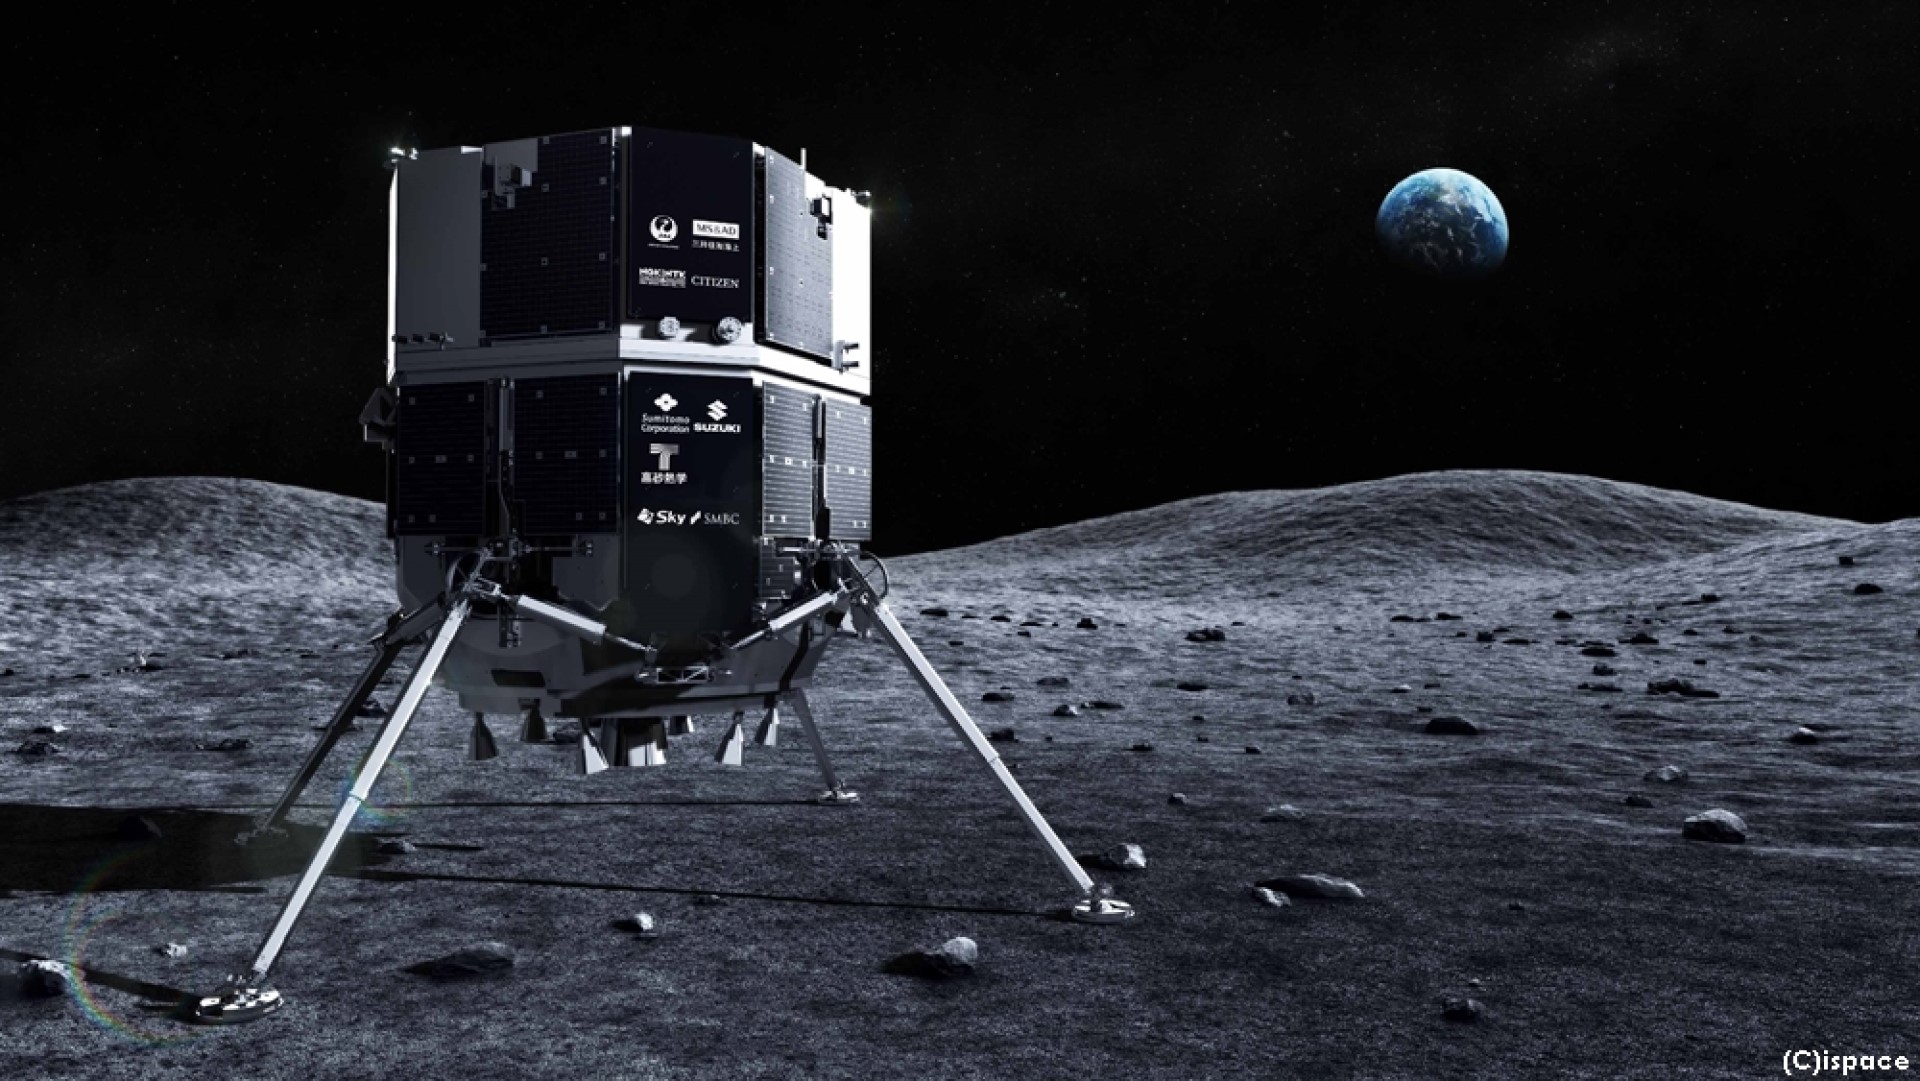 ยาน Hakuto-R ของ ispace เอกชนญี่ปุ่นลงจอดบนดวงจันทร์ไม่สำเร็จ